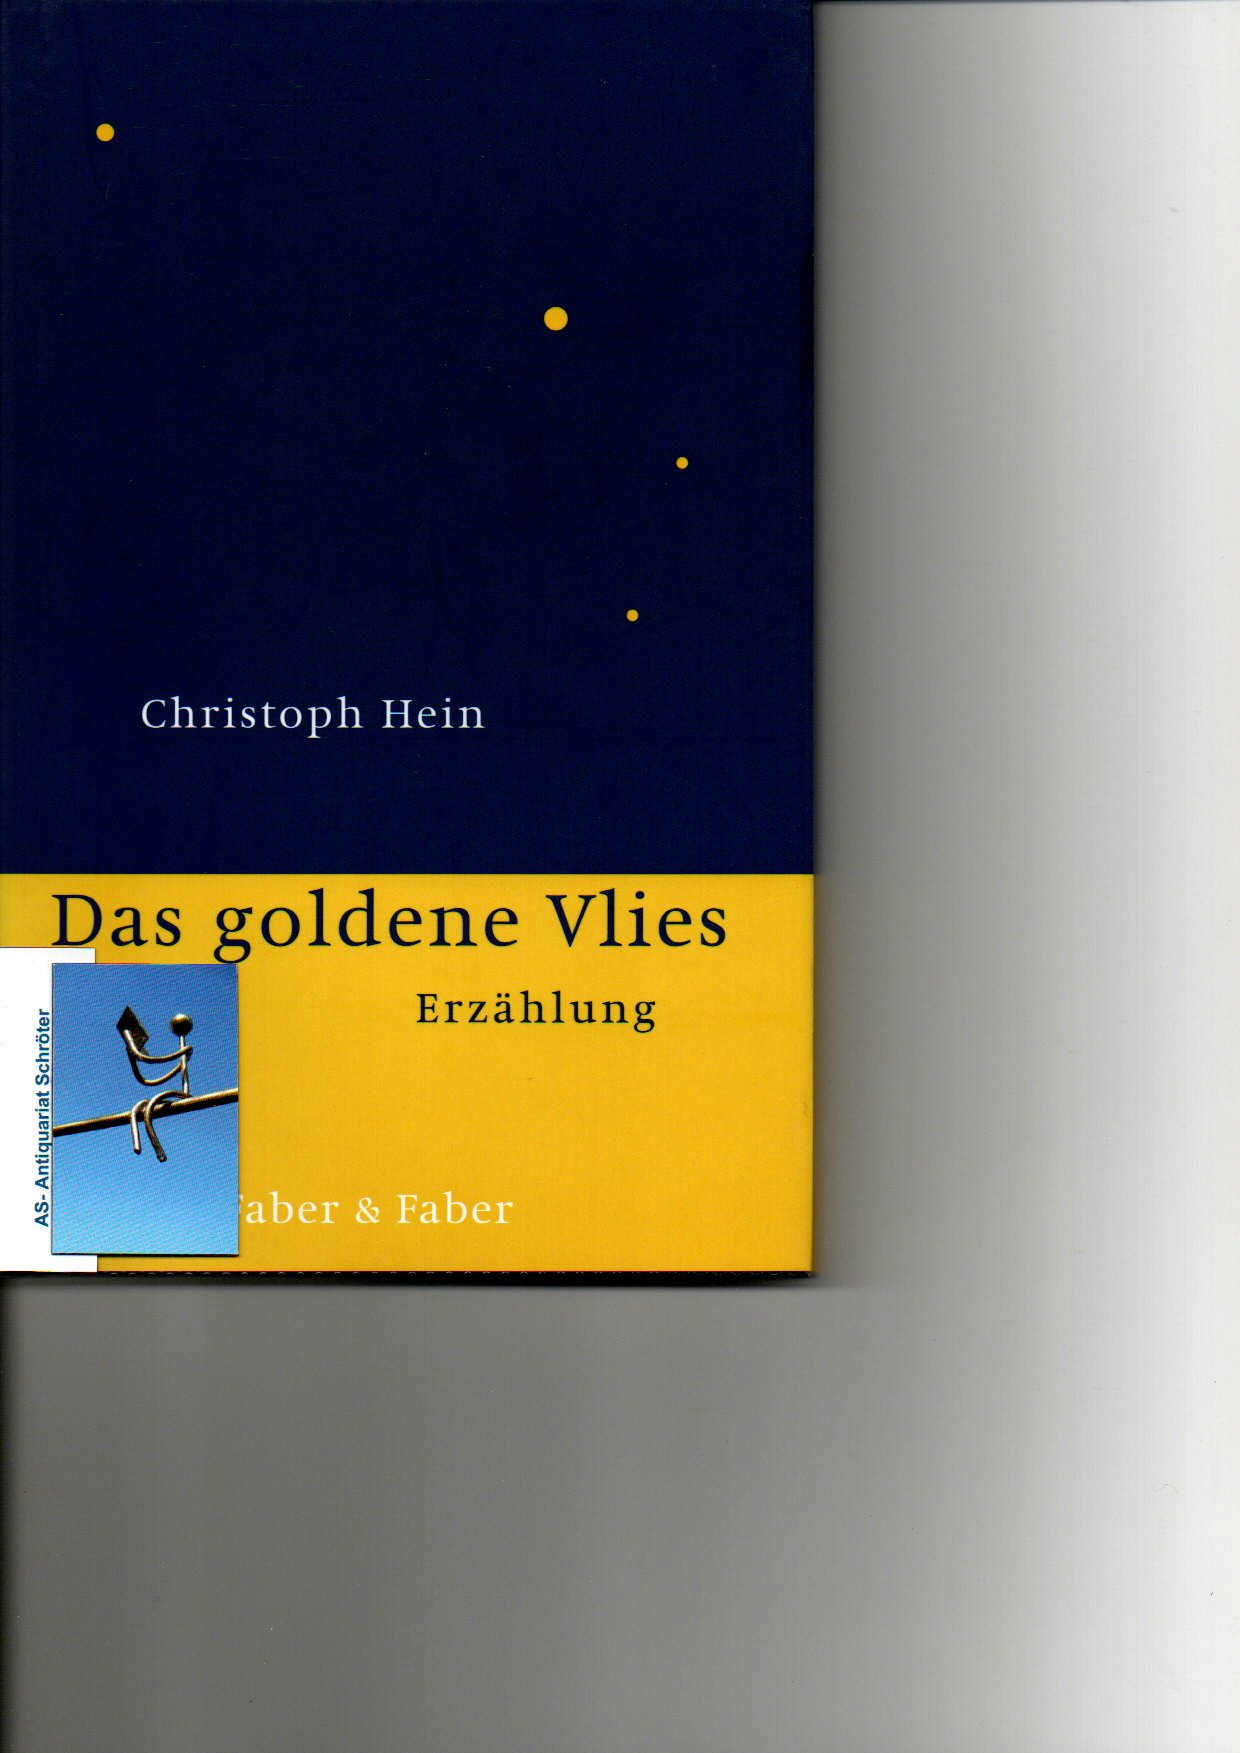 Das goldene Vlies. Erzählung. [signiert, signed]. - Hein, Christoph (1944)